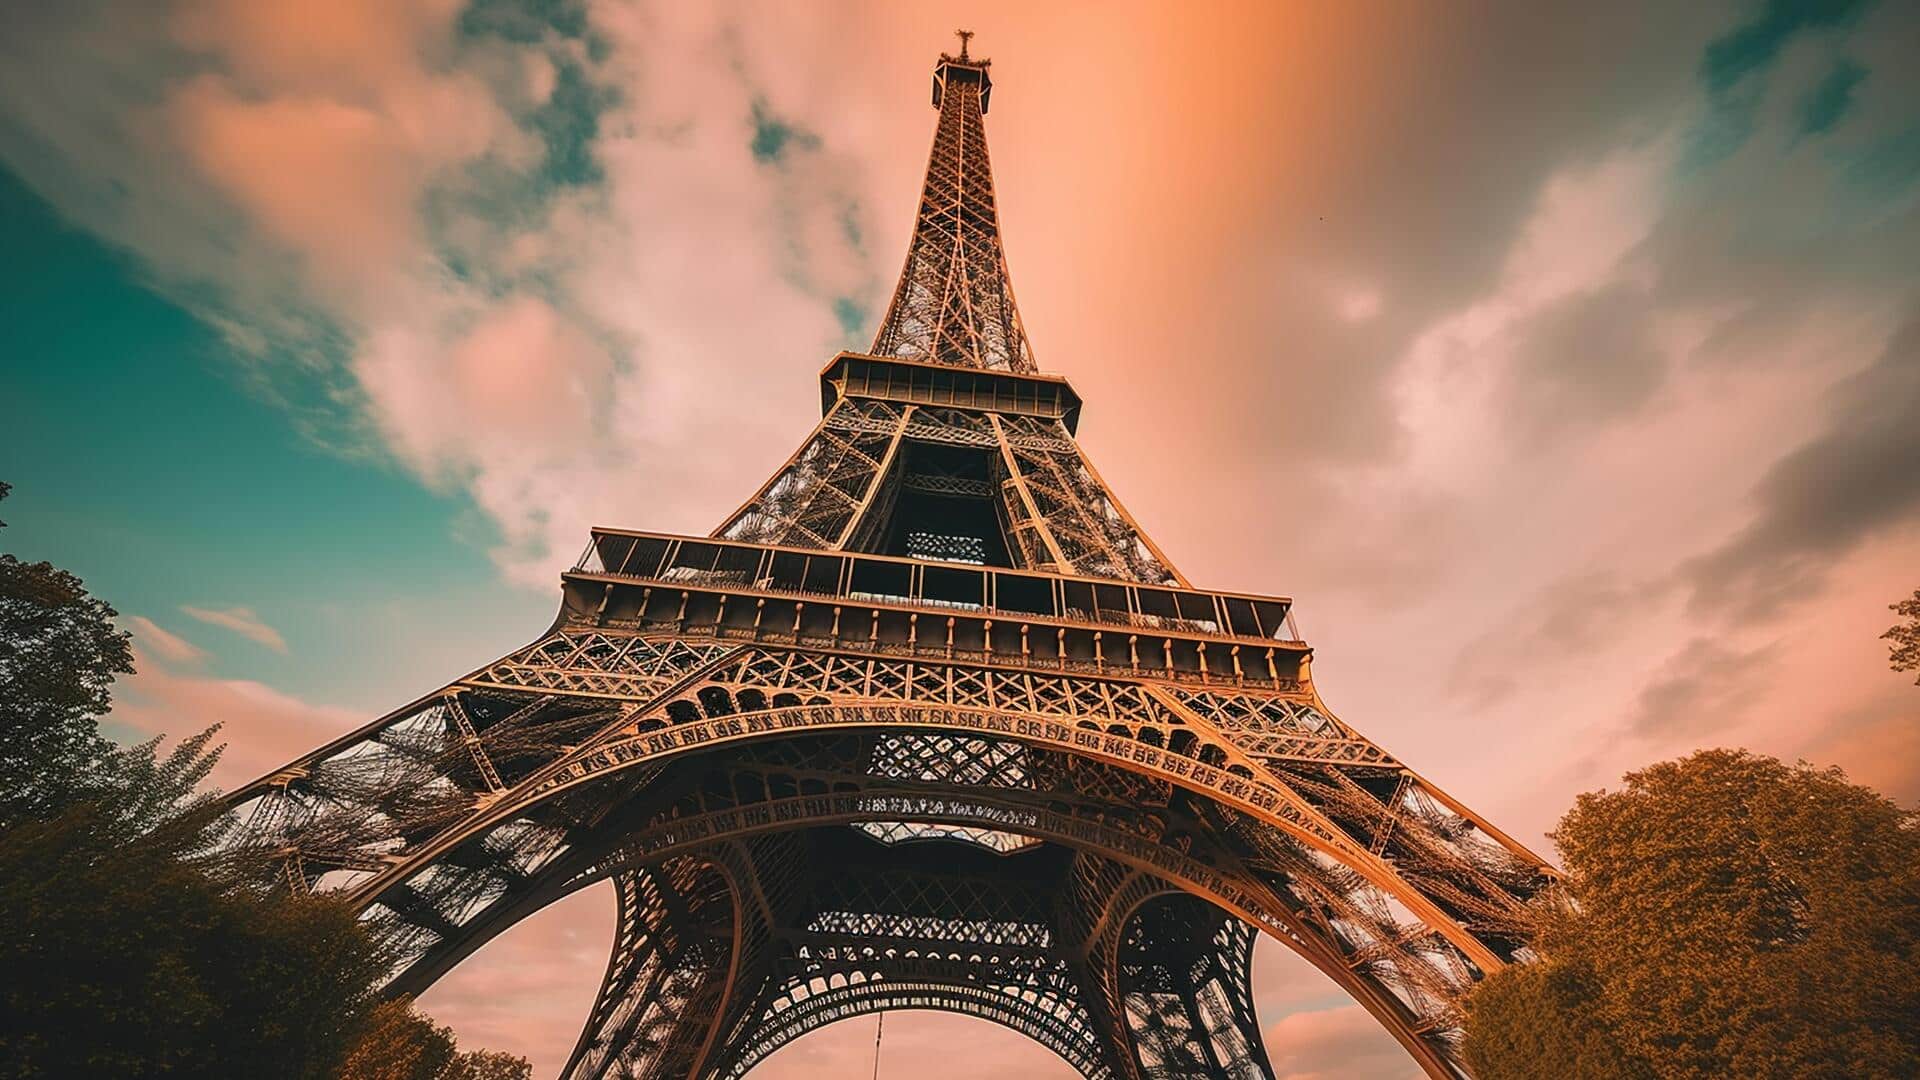 फ्रांस: पेरिस का एफिल टावर बंद, कर्मचारियों की हड़ताल से पर्यटक निराश